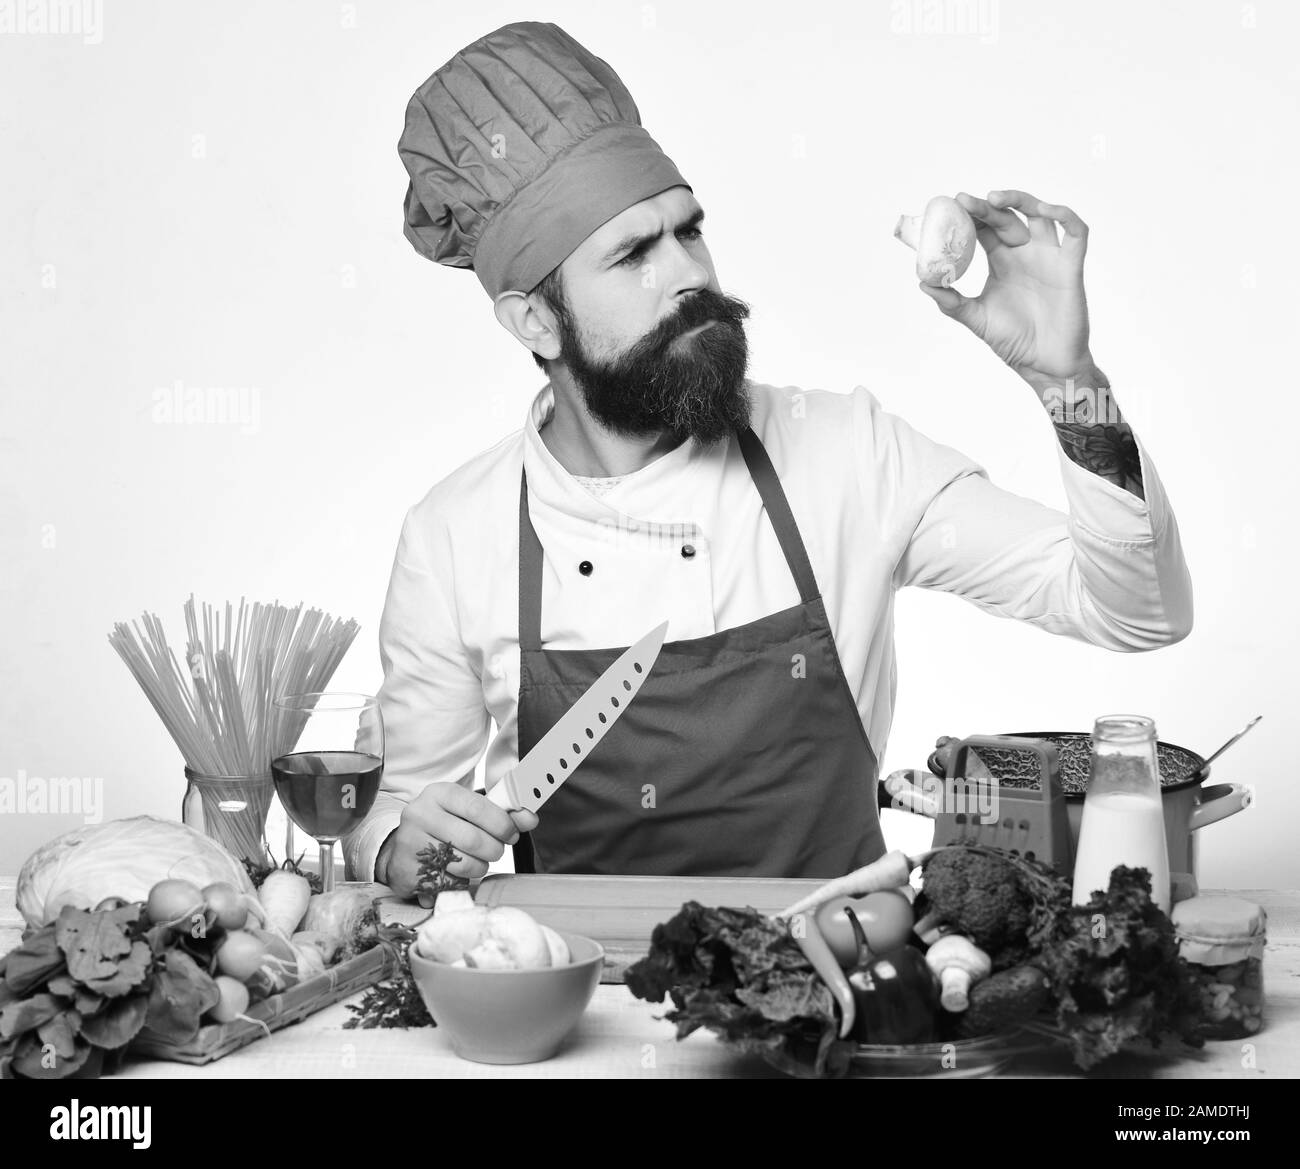 Concept du processus de cuisson. Le chef prépare le repas. Homme avec barbe, tenez les champignons et le couteau sur fond blanc. Faites cuire avec le visage délicat en uniforme bordeaux assis par une table de cuisine avec des légumes et des ustensiles de cuisine. Banque D'Images